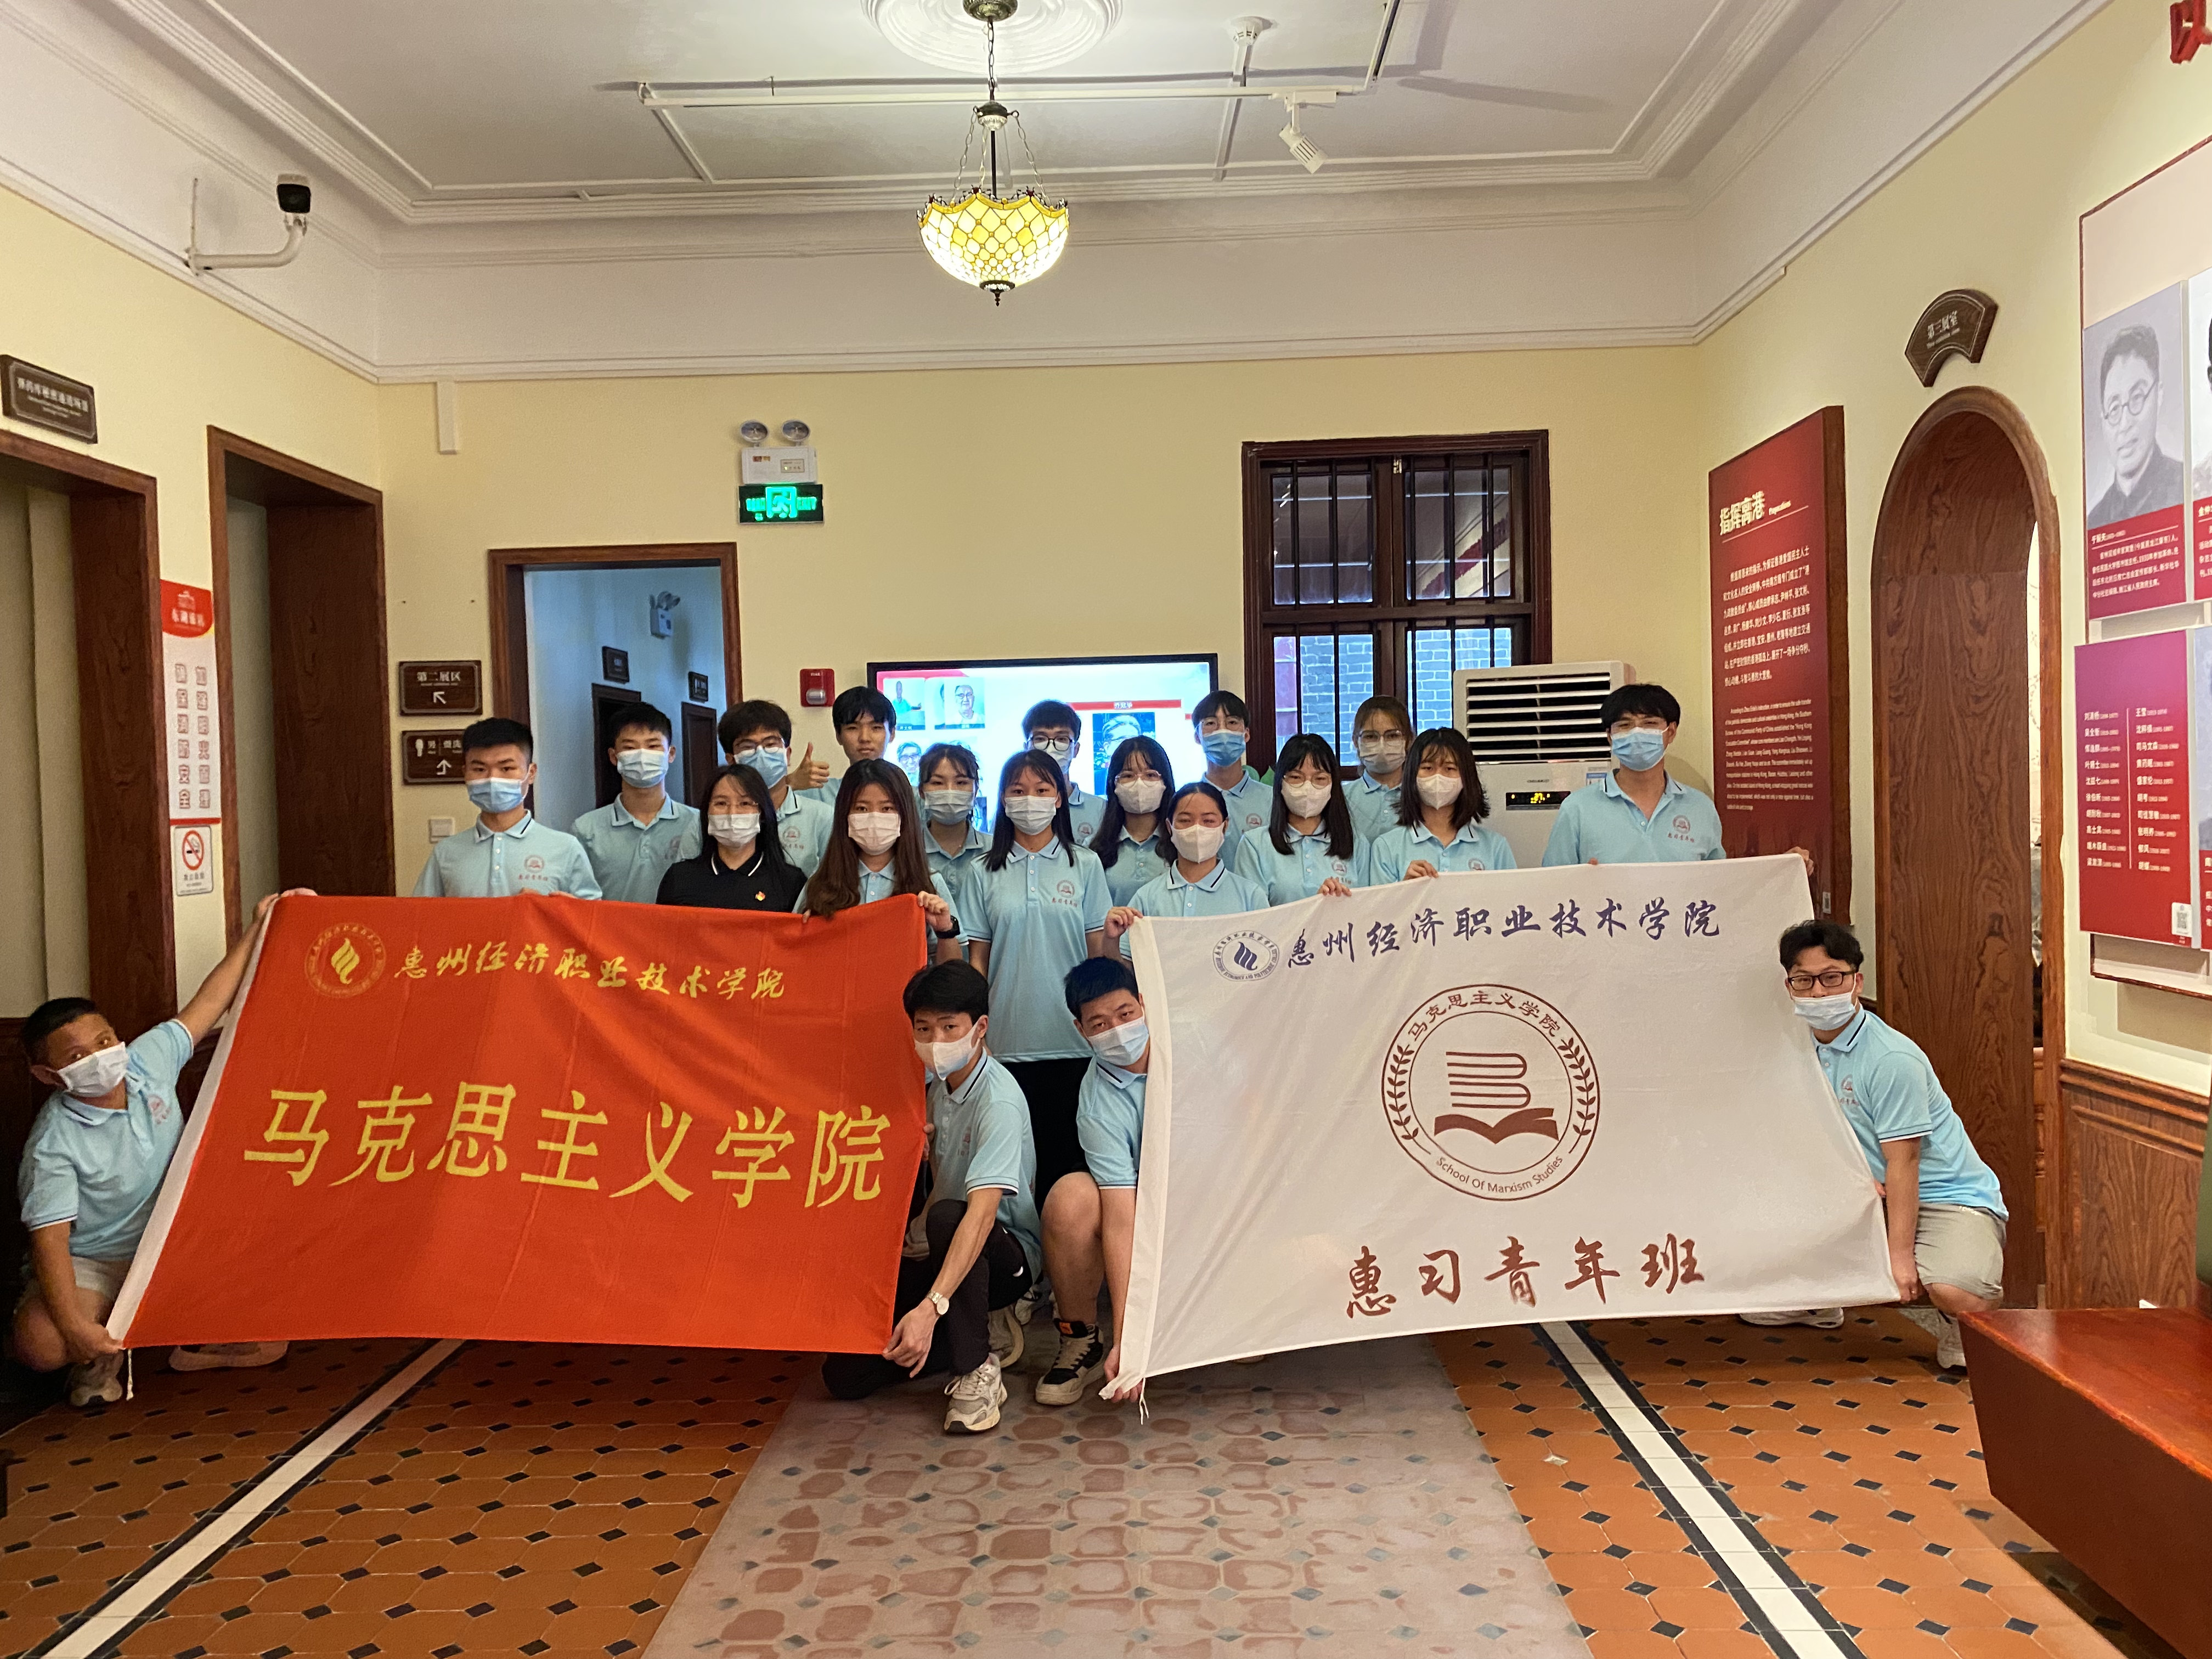 马克思主义学院组织惠习青年班参观东湖旅店 寻找红色记忆